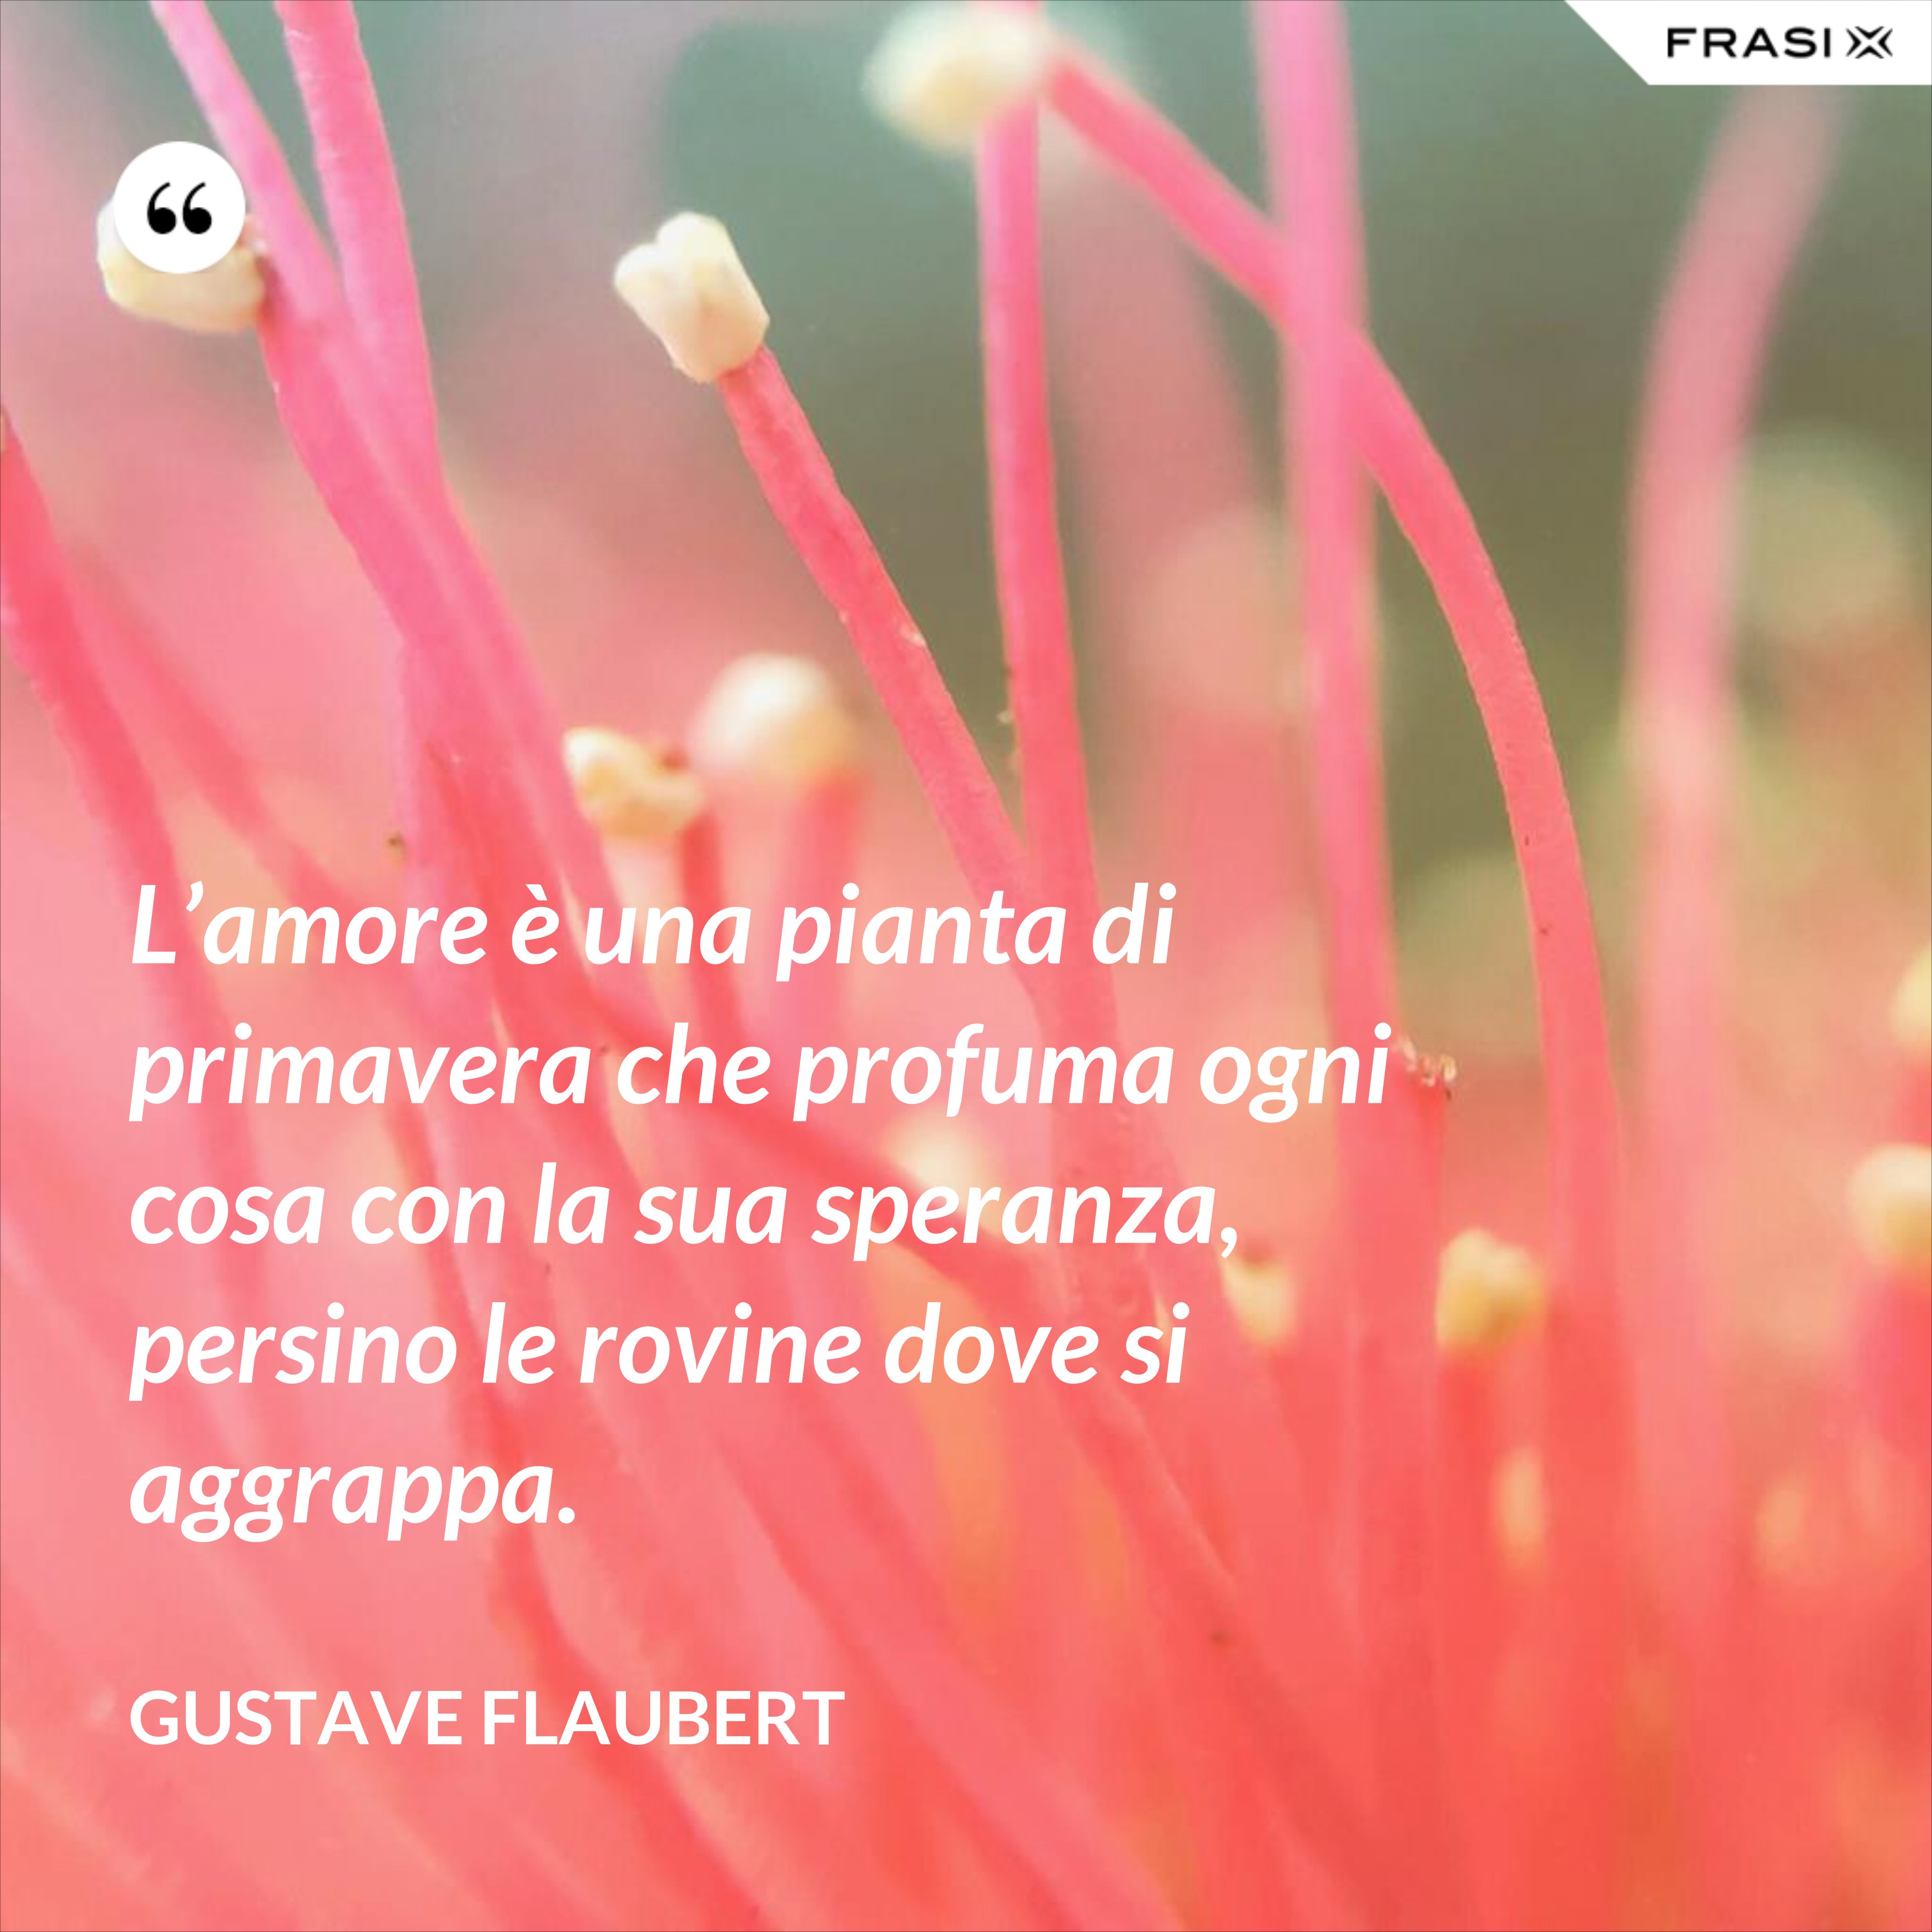 L’amore è una pianta di primavera che profuma ogni cosa con la sua speranza, persino le rovine dove si aggrappa. - Gustave Flaubert